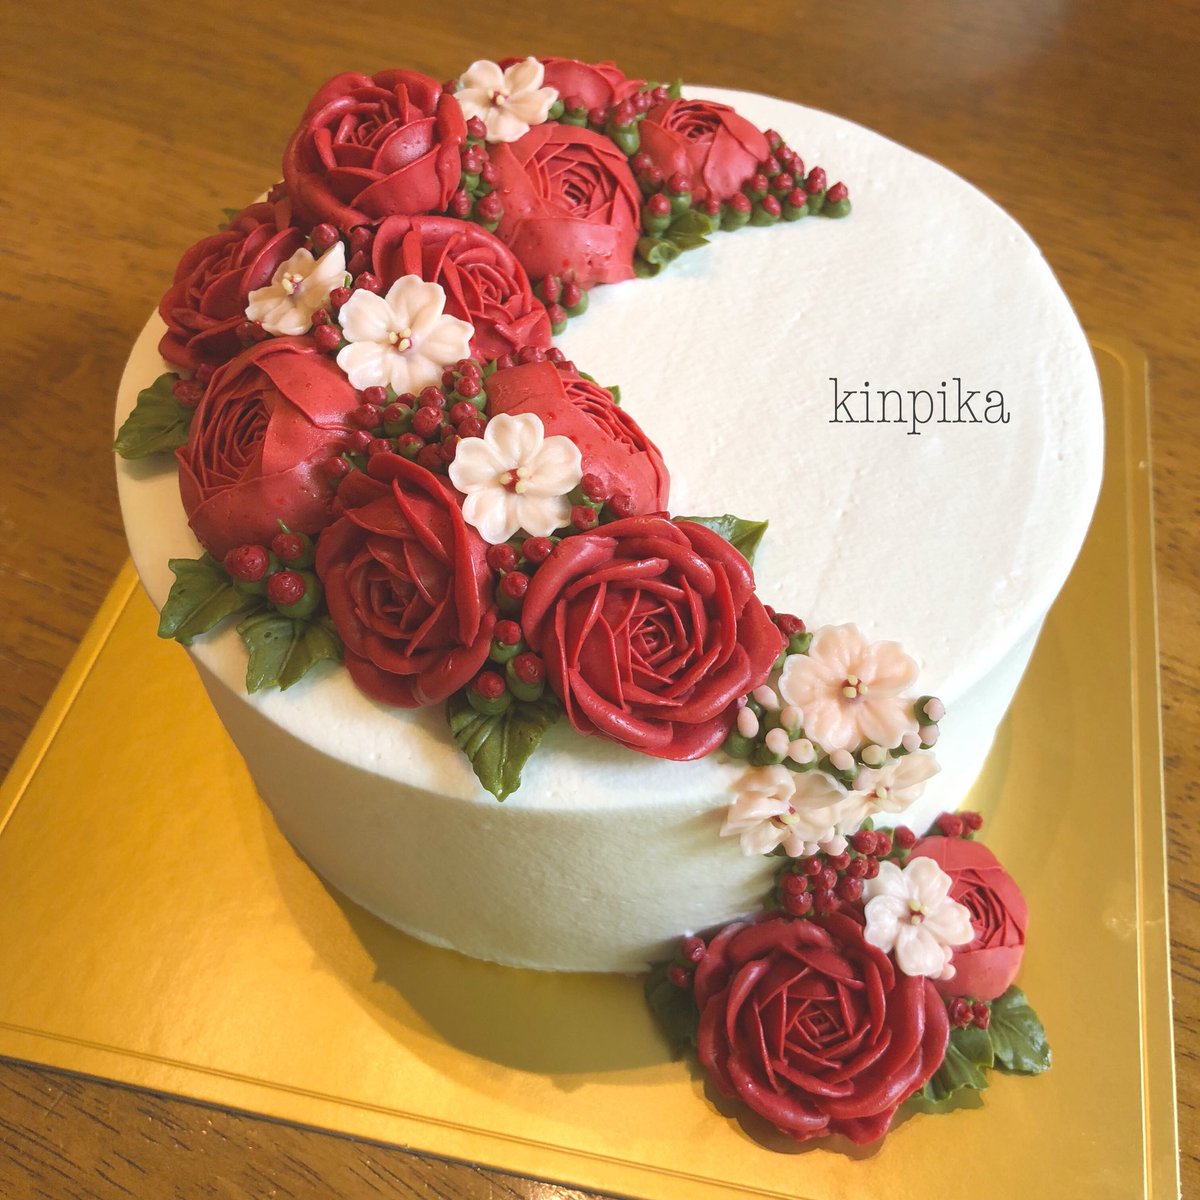 きん Miyajima 赤いバラと桜のケーキ 2年前にも赤祭りの日があったなぁ 夏に突如訪れる赤の日 毎年楽しみになってしまいます フラワーケーキ 安曇野 Cakeworks Kinpika T Co P6u2kumj Twitter